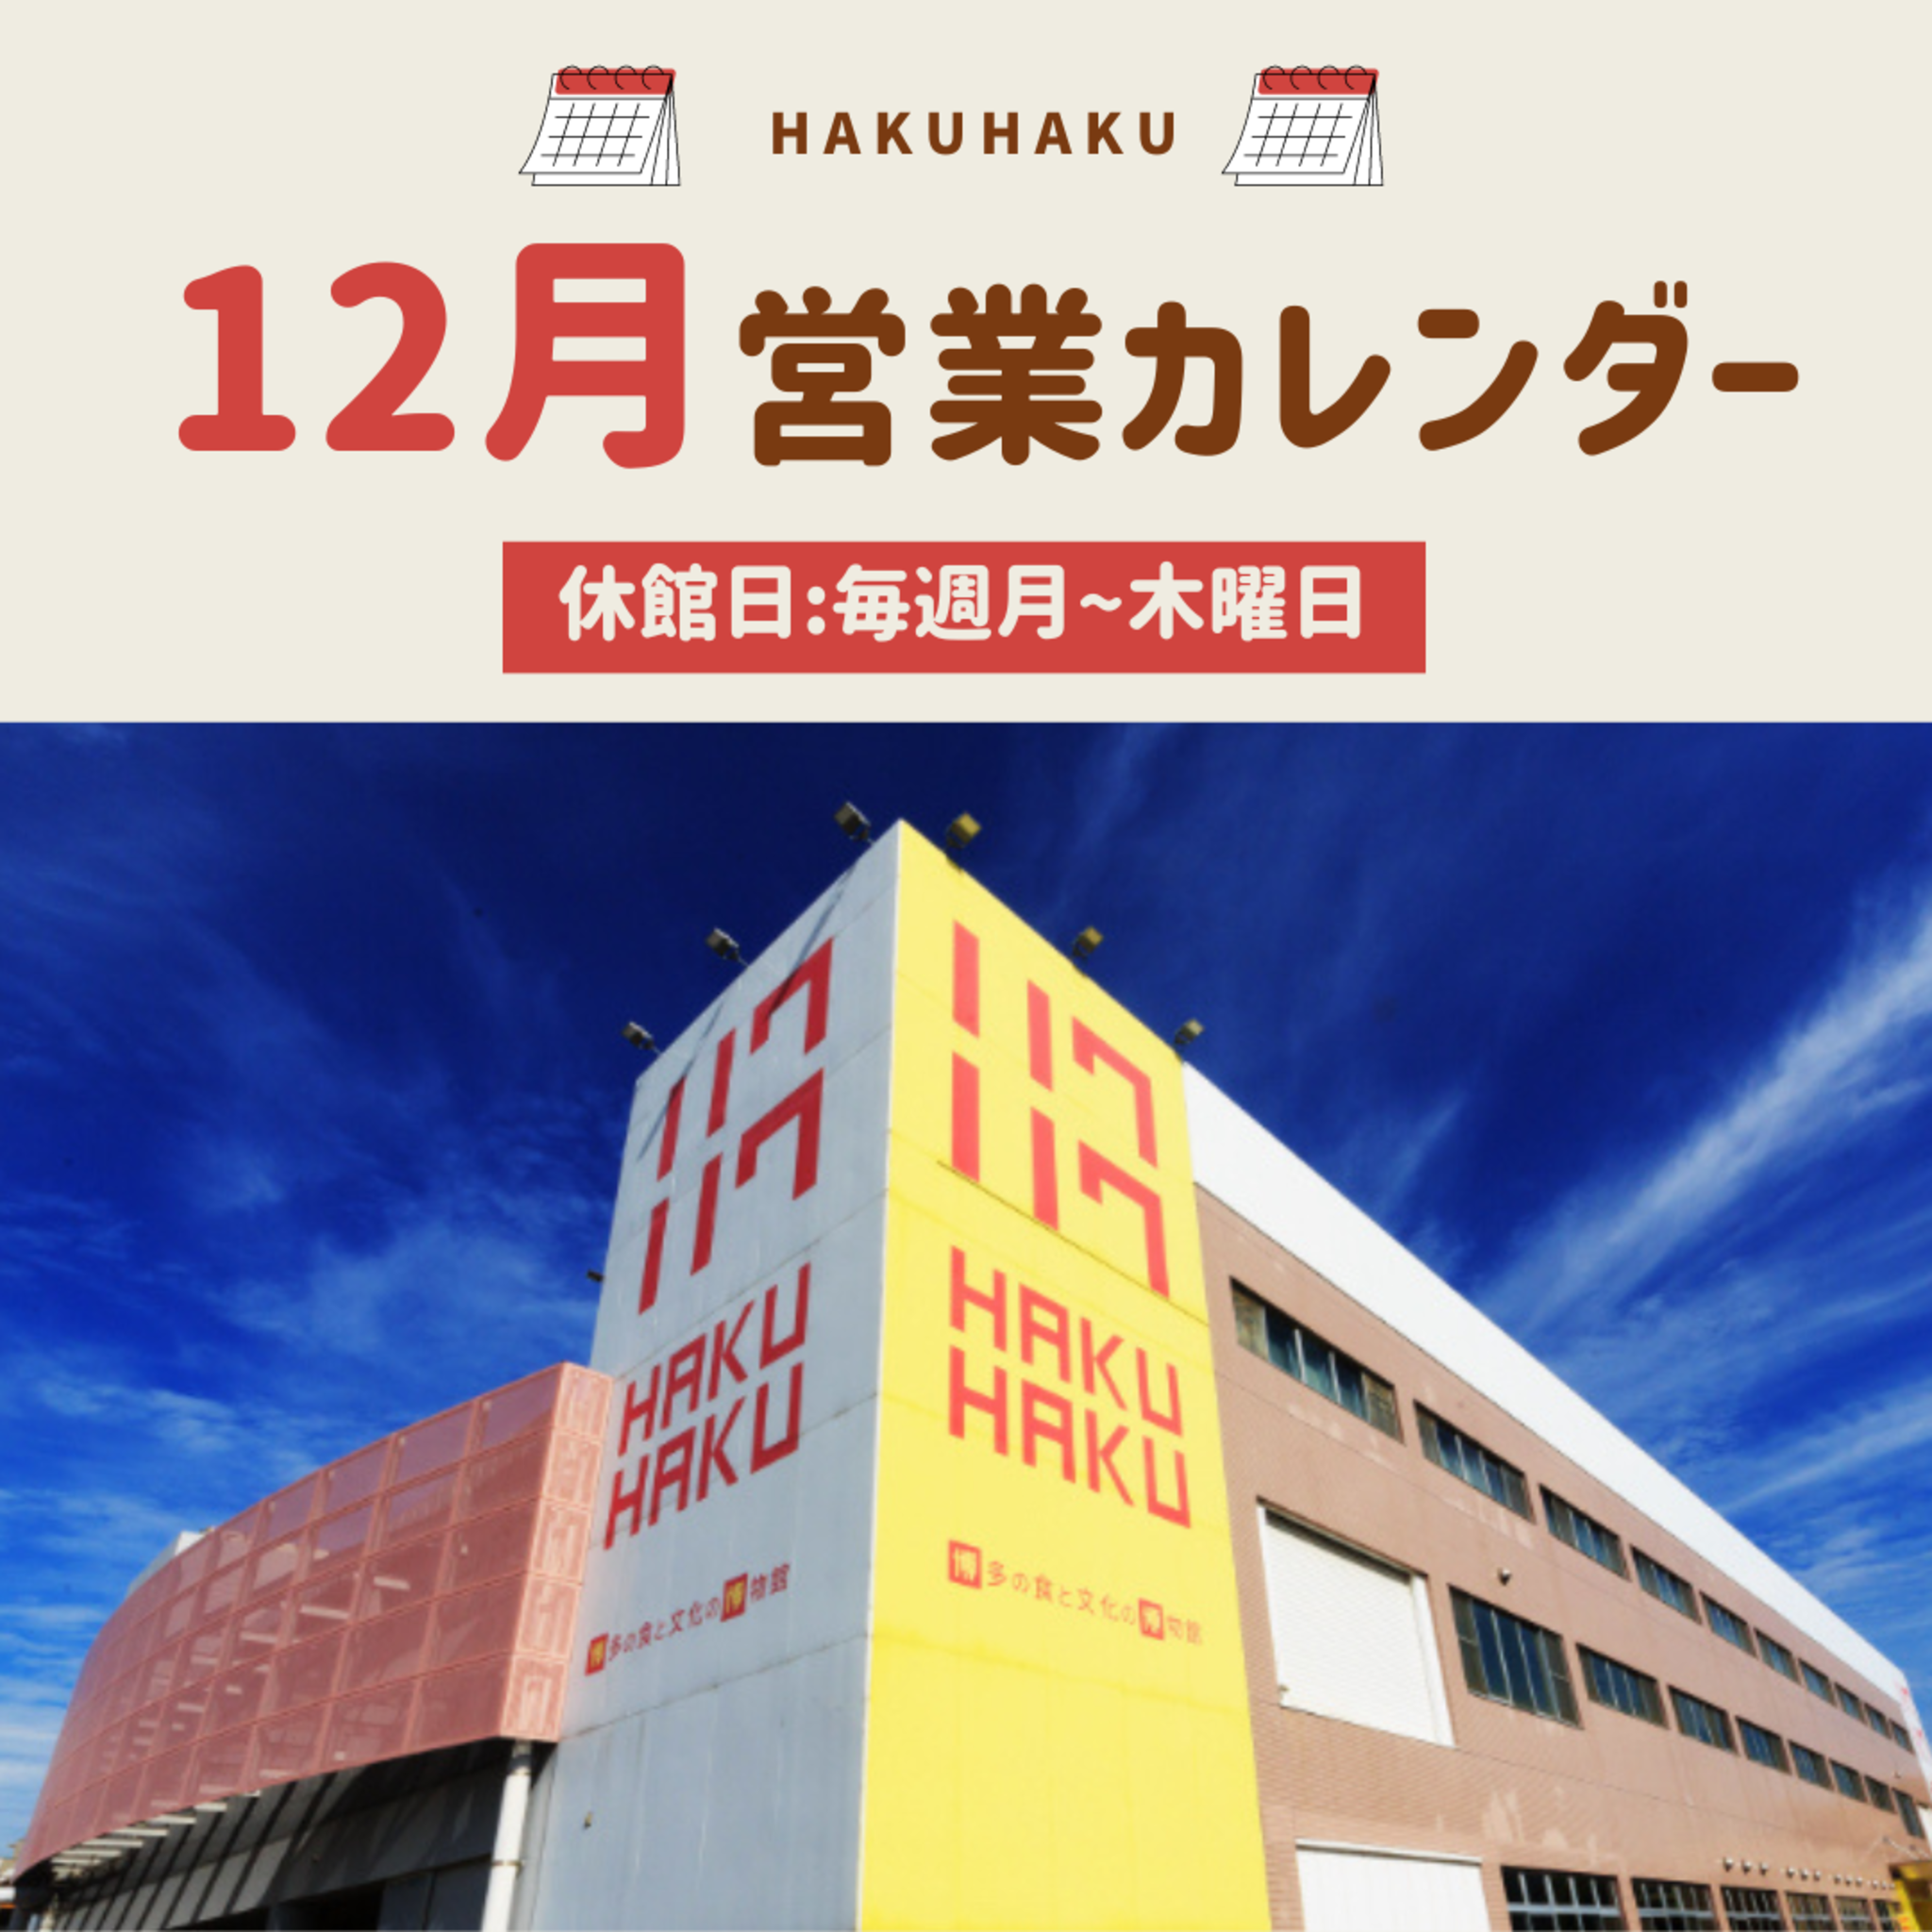 博多の食と文化の博物館ハクハクからのお知らせ(2023年12月の営業日について)に関する写真